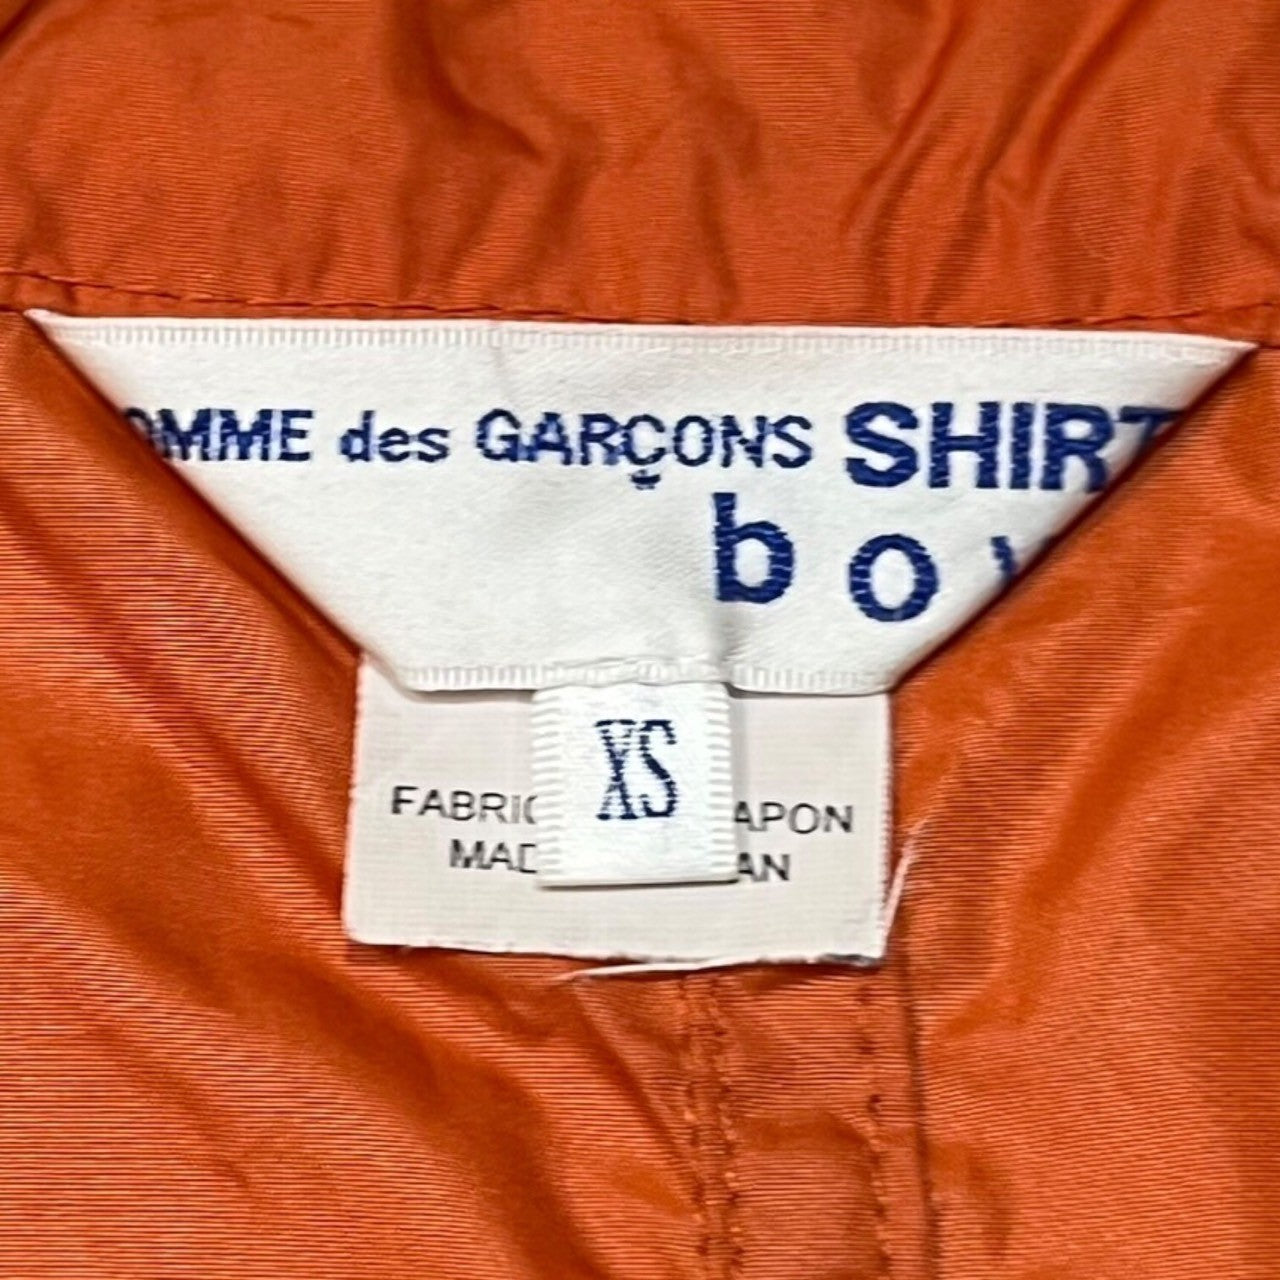 COMME des GARCONS SHIRT boys(コムデギャルソンシャツボーイズ) 19SS panel design anorak coat/パネルデザインアノラックコート/ナイロン S27934 SIZE XS オレンジ×イエロー×ライトブルー